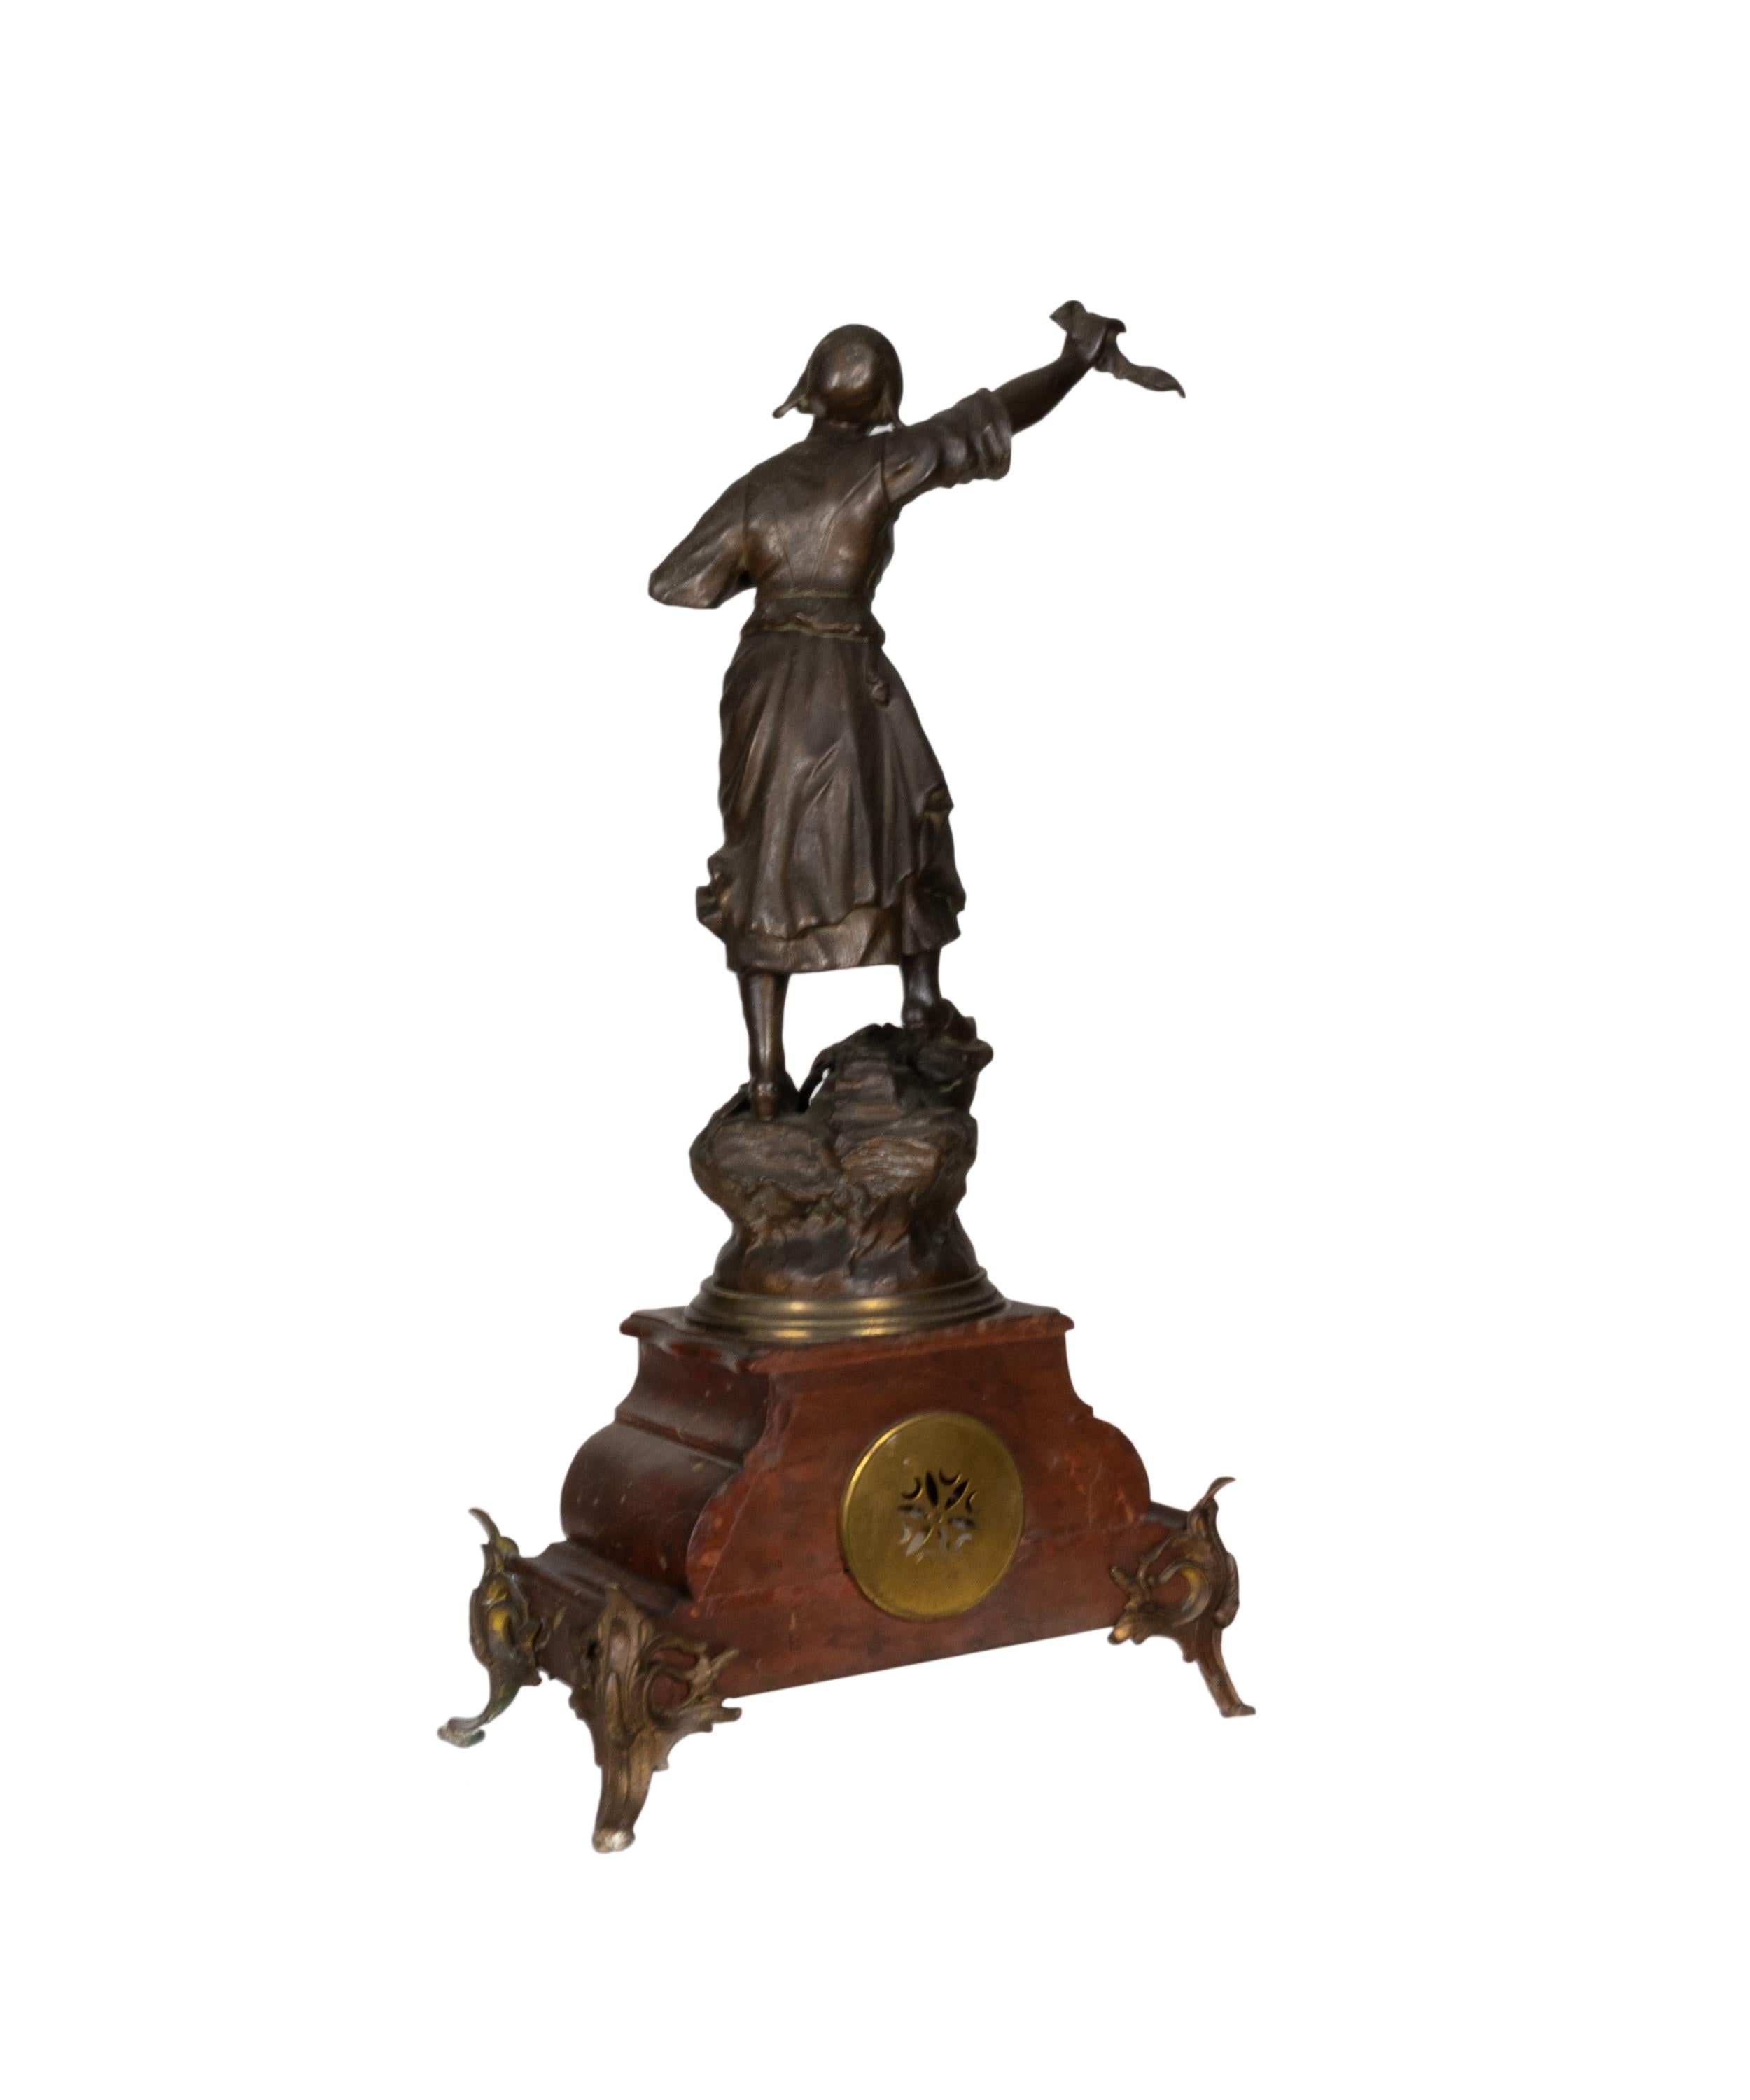 Pendule de cheminée en métal, complète et en état de marche, représentant une paysanne française de la Révolution, avec des détails en marbre de Carrare et un mécanisme suisse fonctionnel. 